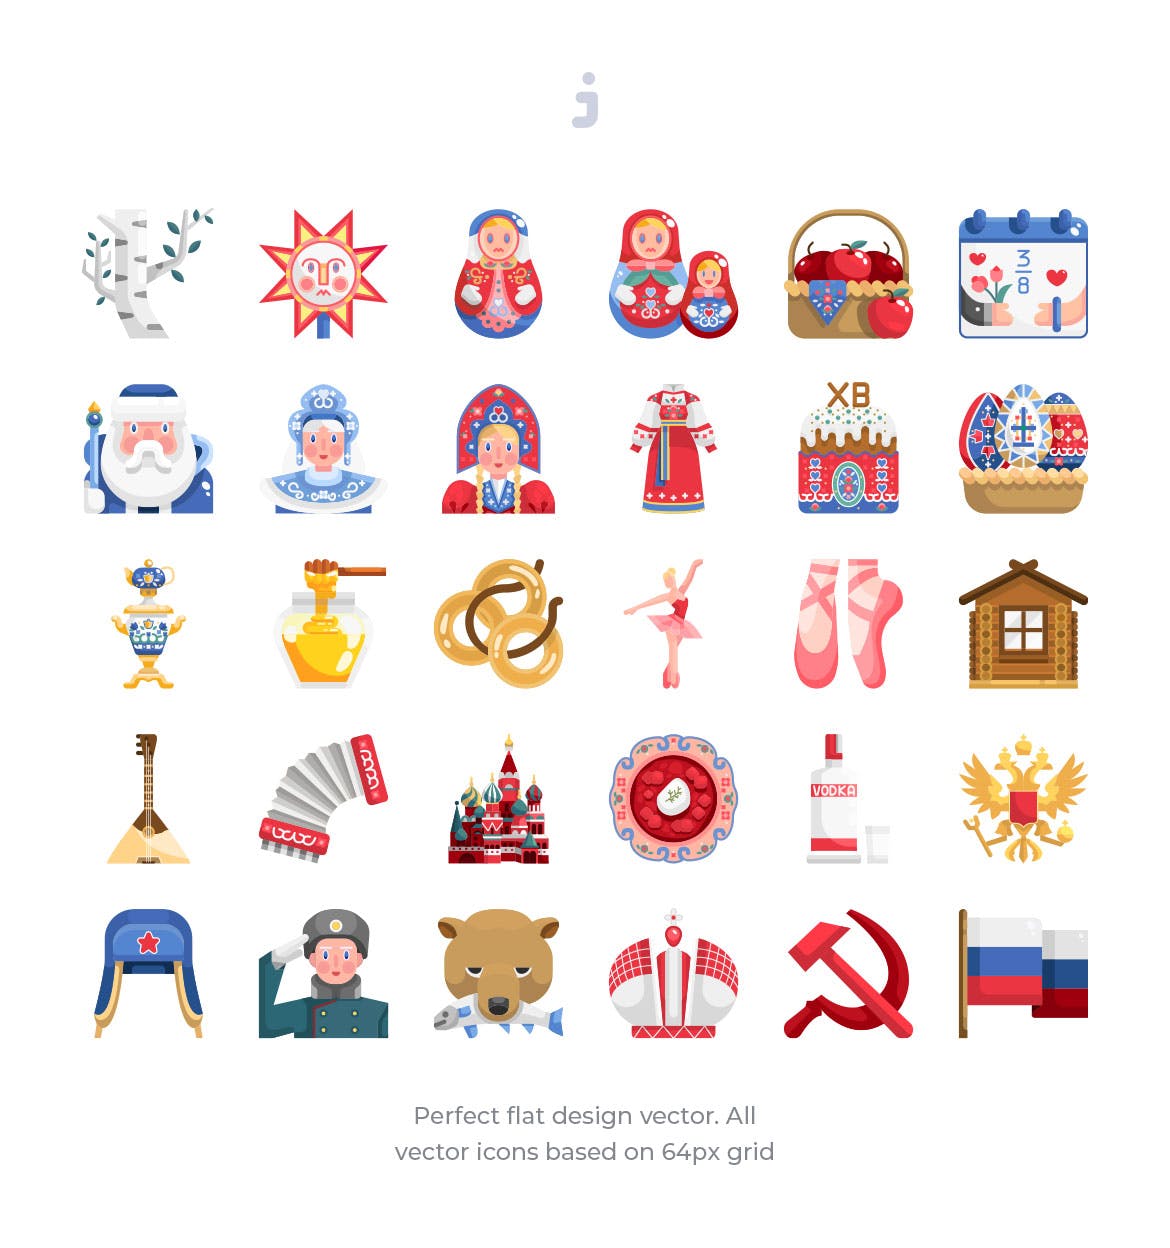 30枚扁平设计风格俄罗斯民族元素矢量素材天下精选图标 30 Russia Element Icons – Flat插图(1)